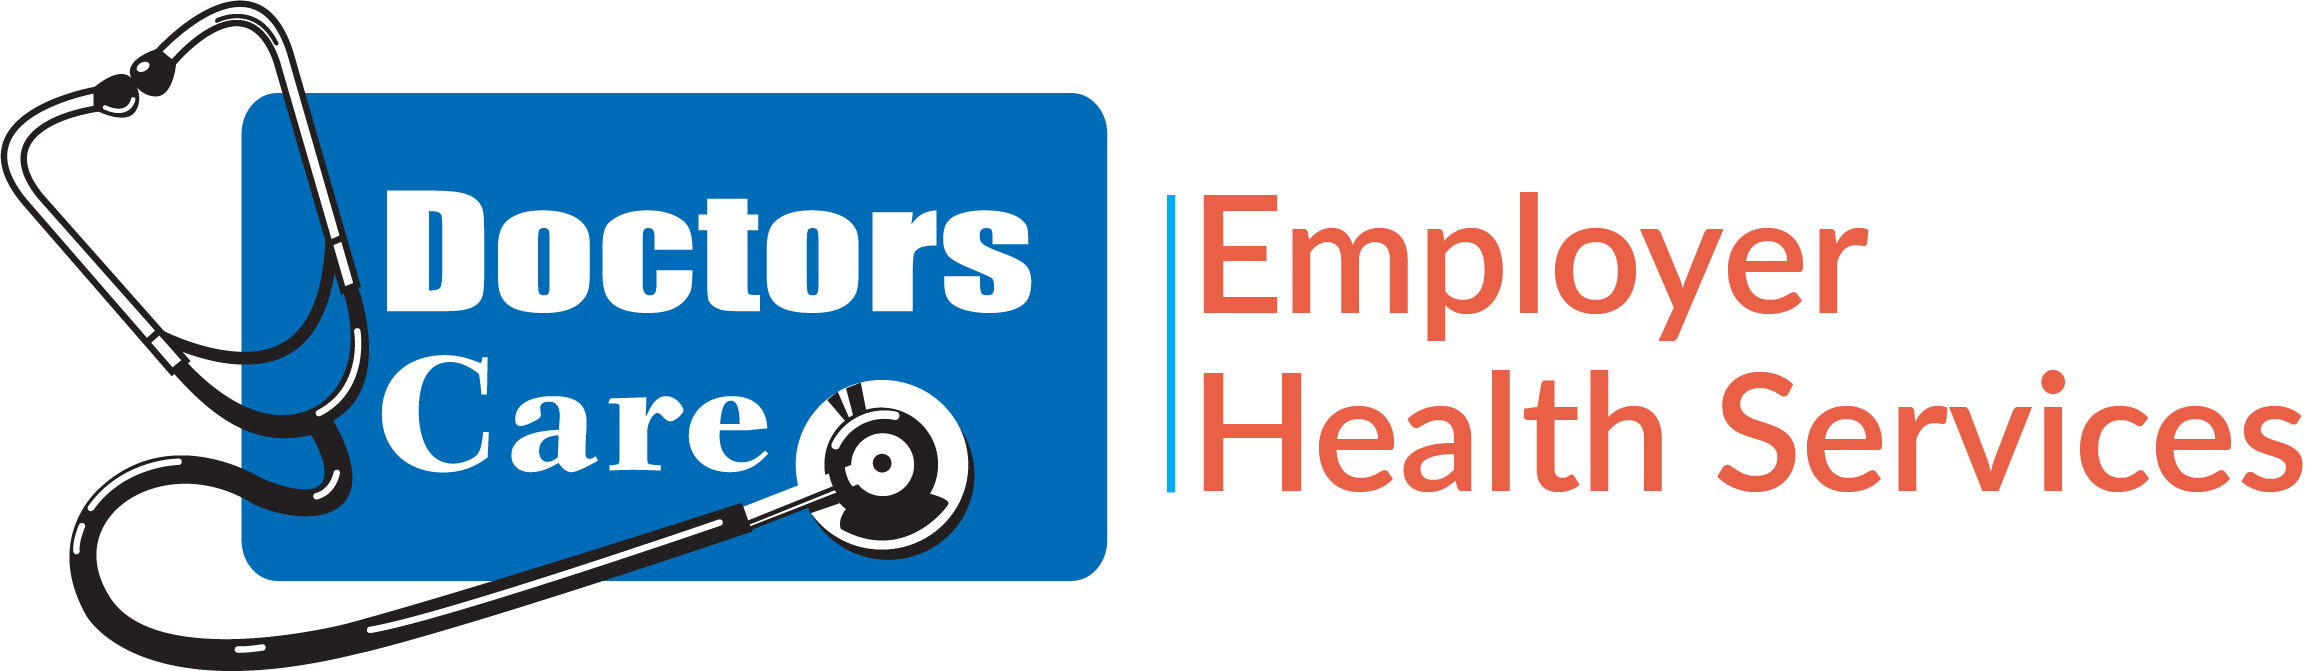 employers.doctorscare.com